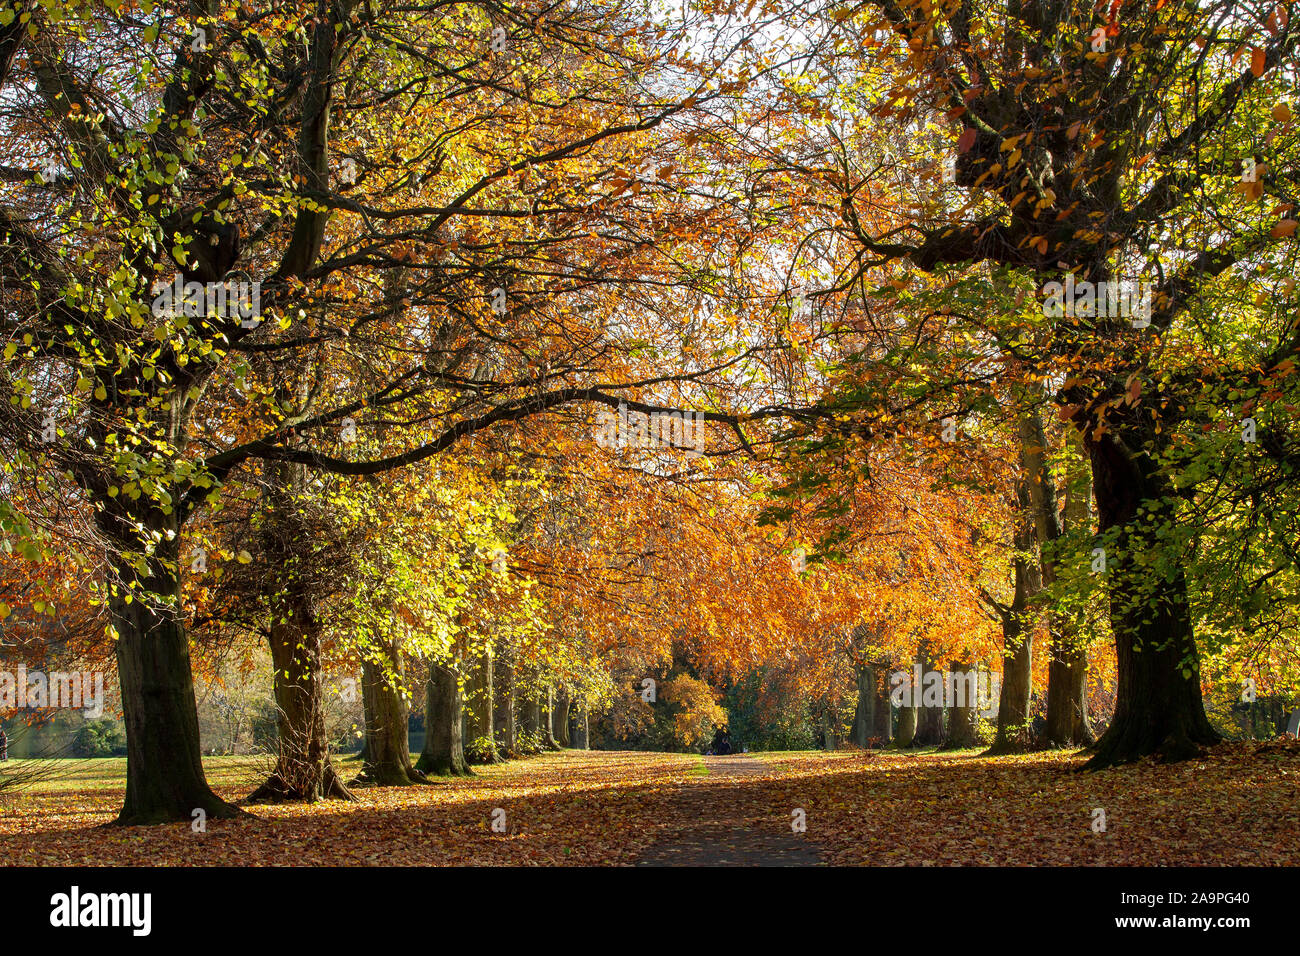 Autumn in Abington Park, Northampton, UK Stock Photo